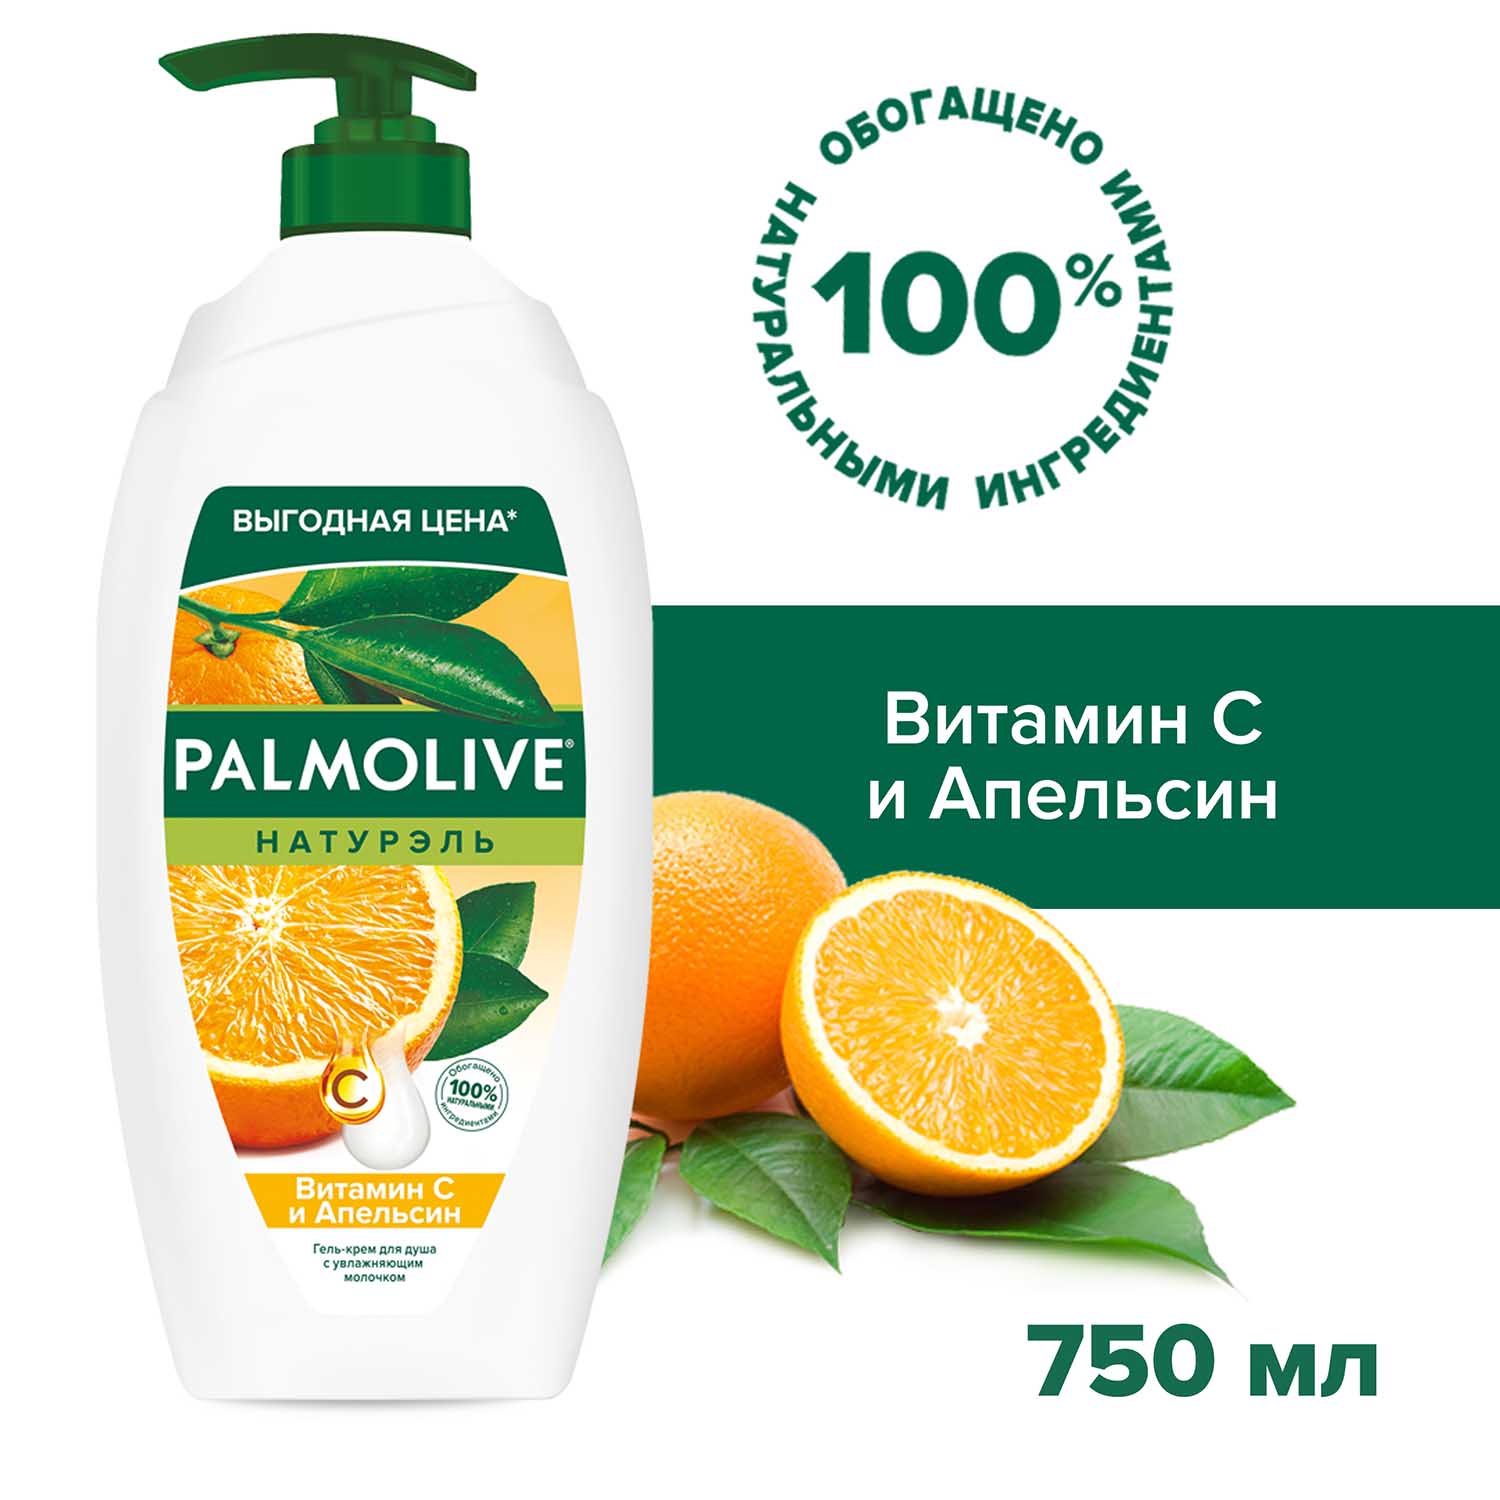 Гель для душа Palmolive Витамин С и Апельсин 750 мл крем гель для душа palmolive натурэль интенсивное увлажнение 750 мл